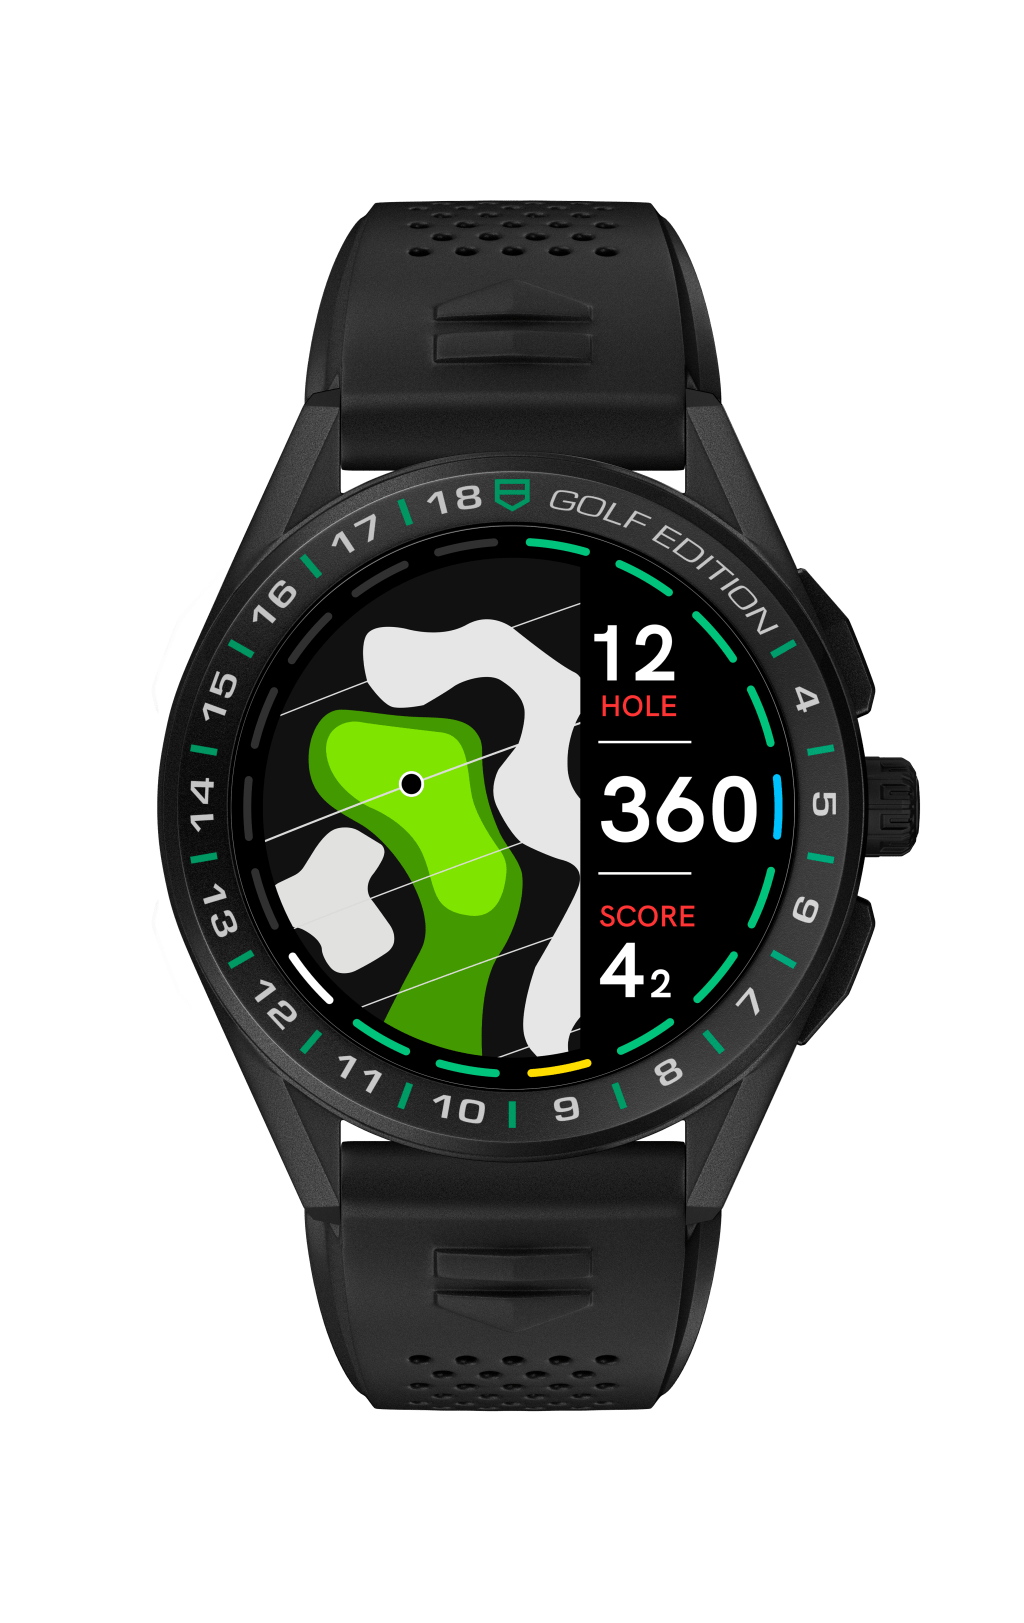 Novo smartwatch da TAG Heuer ganha edição para golfe